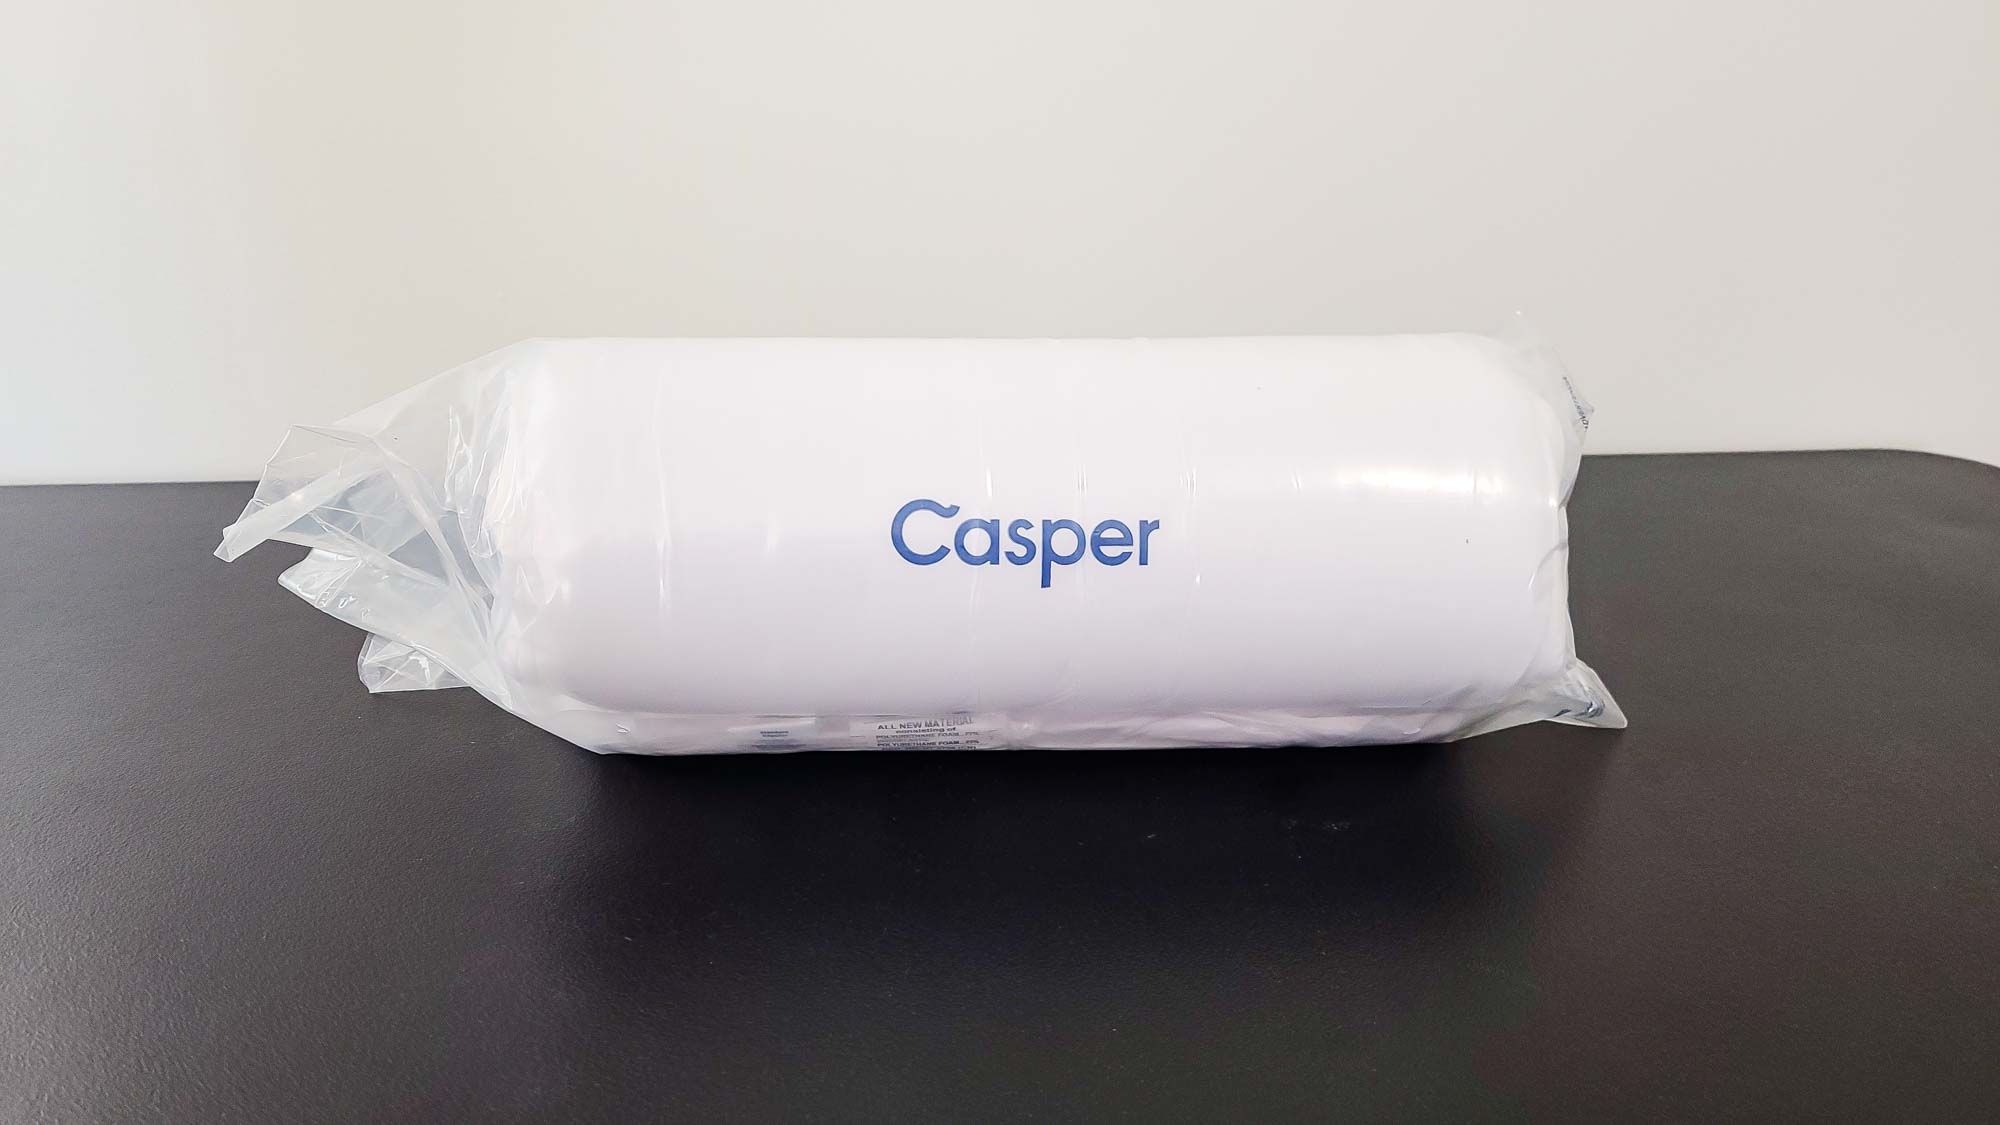 Oreiller en mousse Casper avec technologie Snow dans un sac en plastique